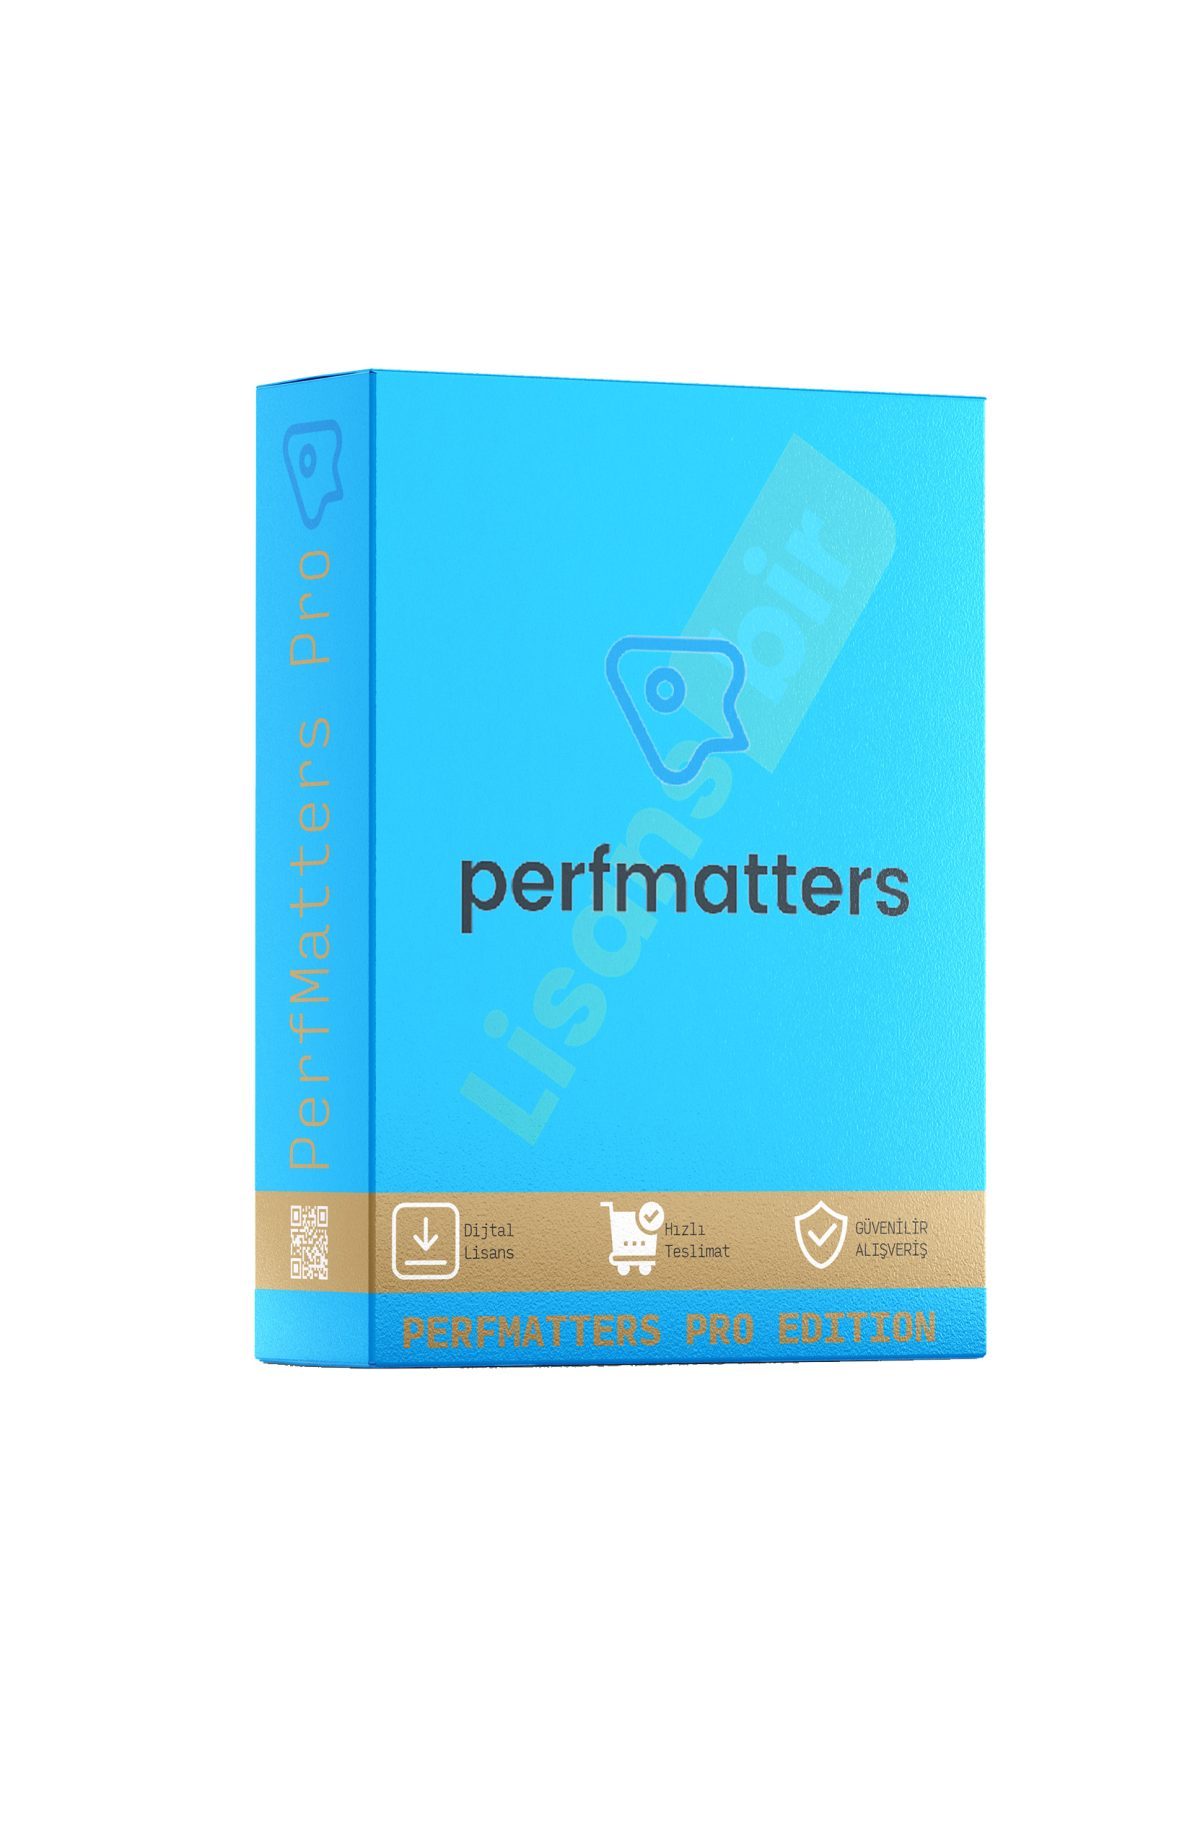 PerfMatters Pro özellikleri ve çekici yönleri hakkında daha fazla bilgi için Lisansbir ürün sayfasını ziyaret edebilirsiniz.